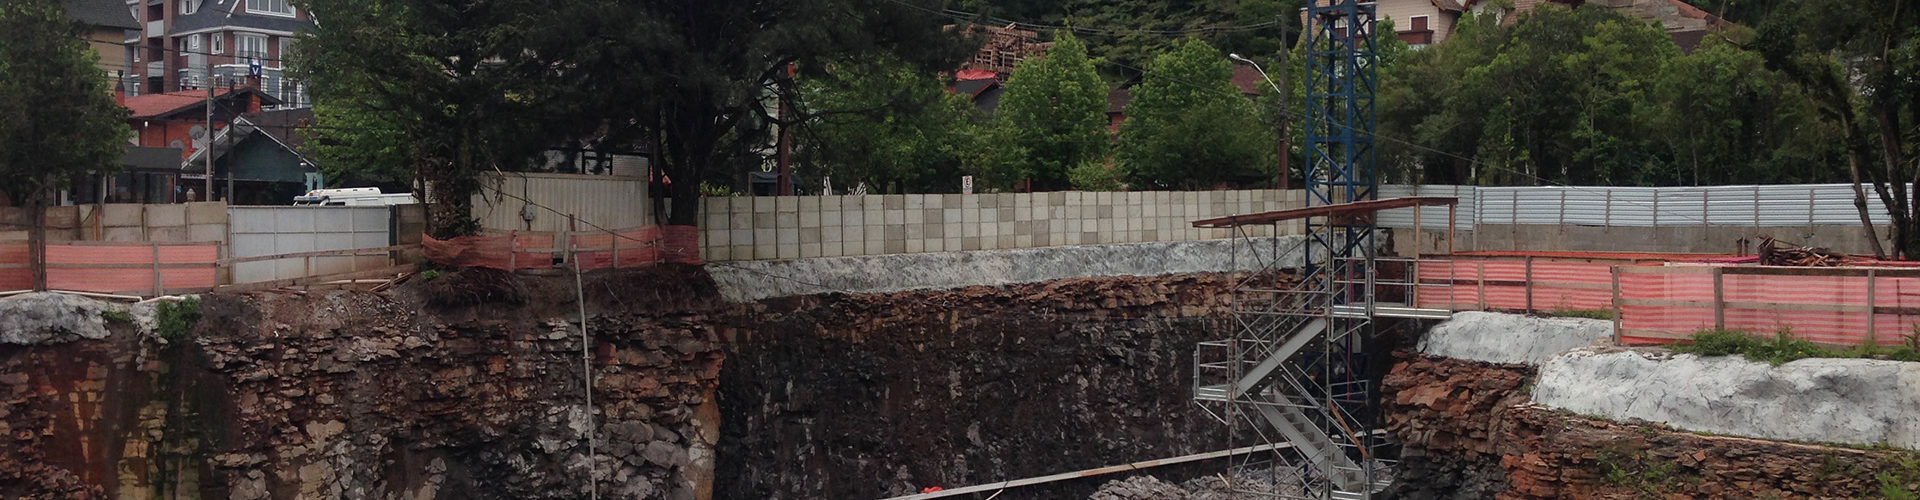 Desmontes de Alta complexidade para fundações do Hotel Laghetto em Gramado – RS